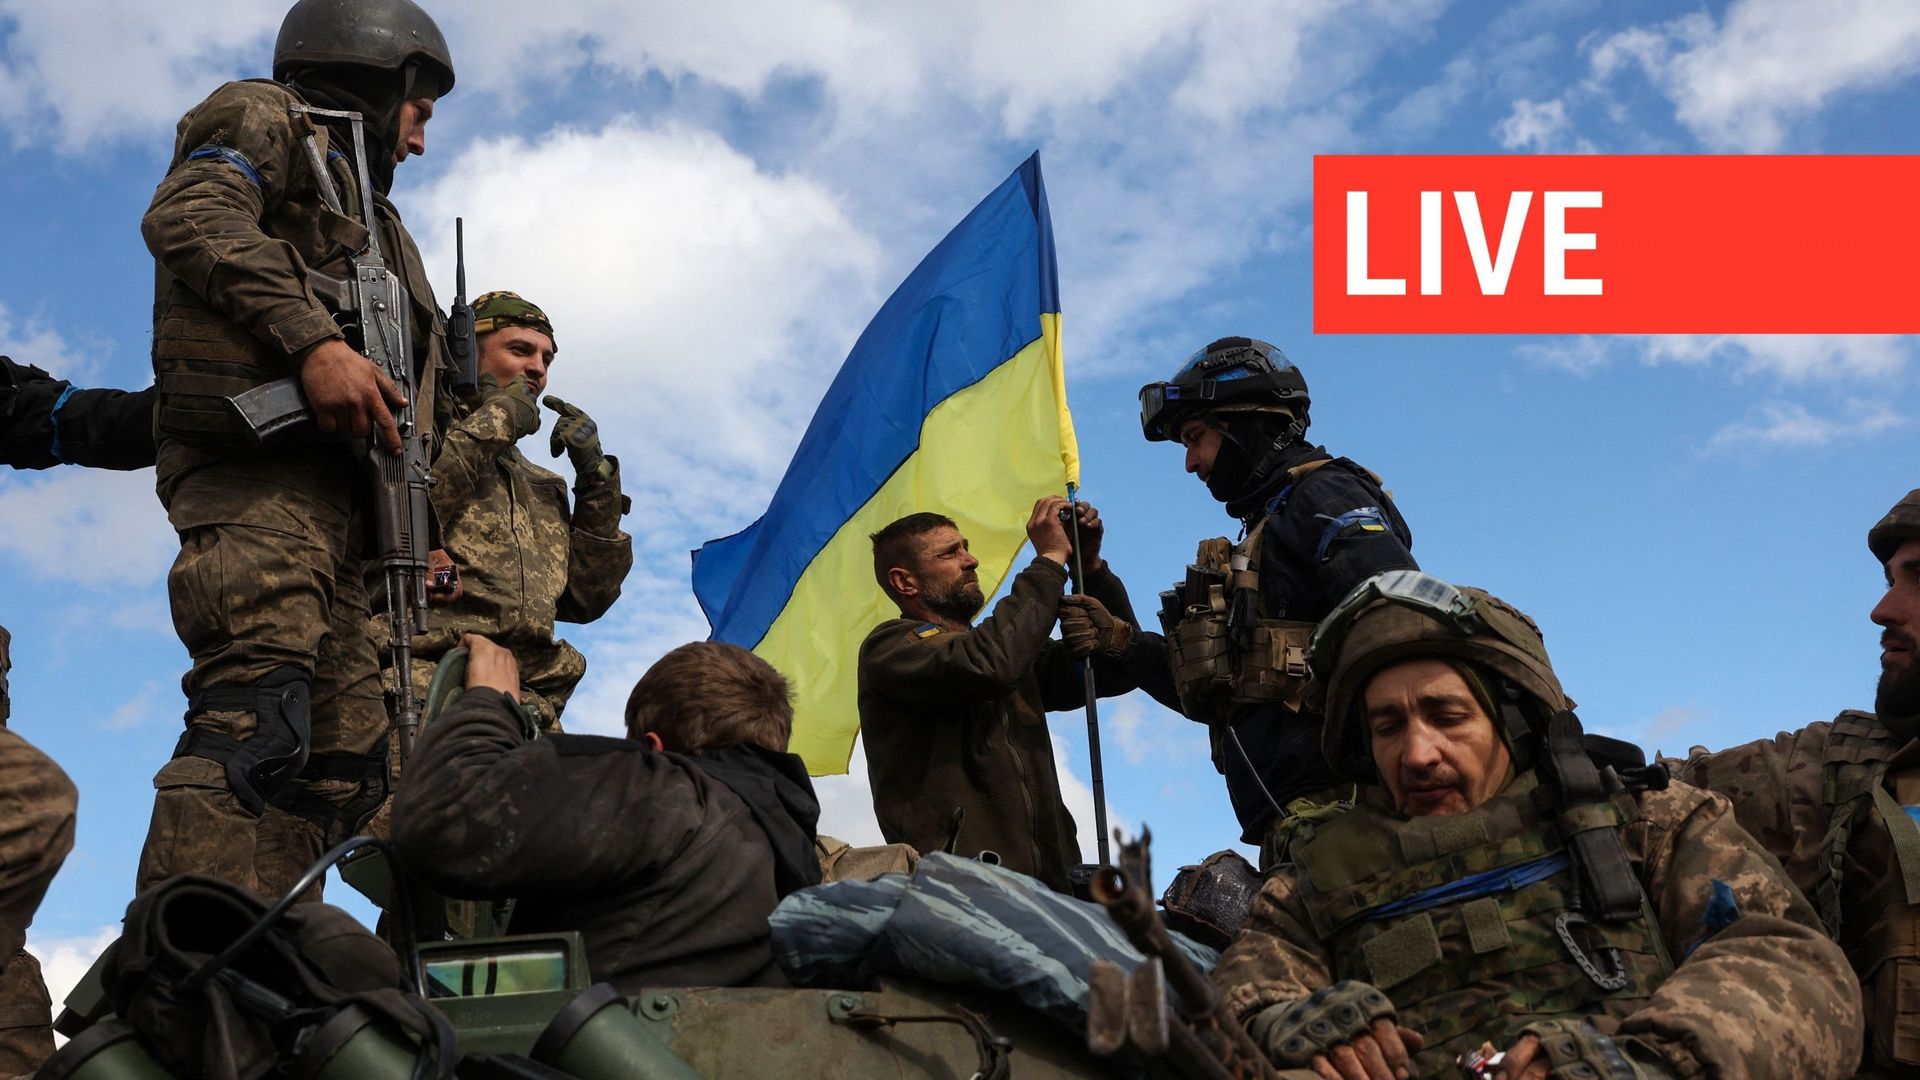 Des soldats ukrainiens ajustent un drapeau national au sommet d'un véhicule blindé de transport de troupes sur une route près de Lyman, dans la région de Donetsk, le 4 octobre 2022.